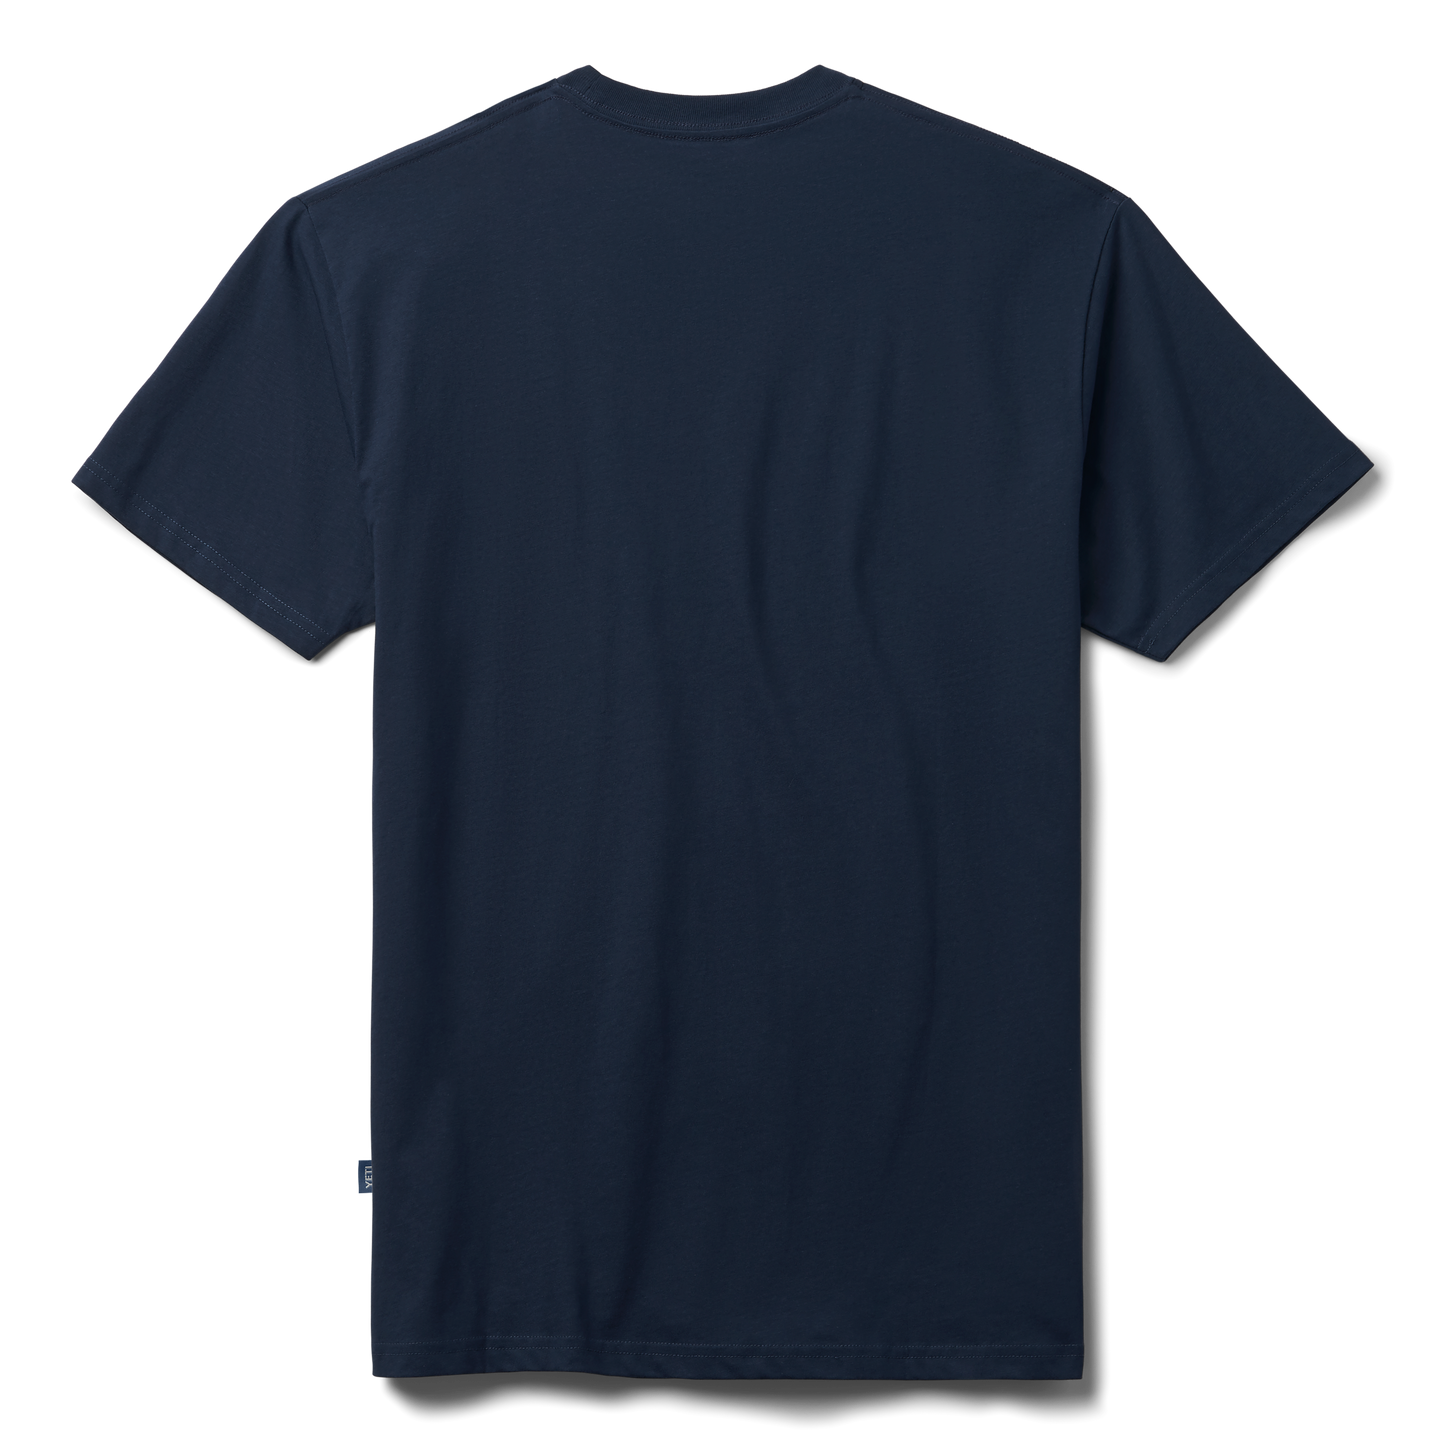 YETI Premium T-shirt met korte mouwen met logobadge Navy/Wit